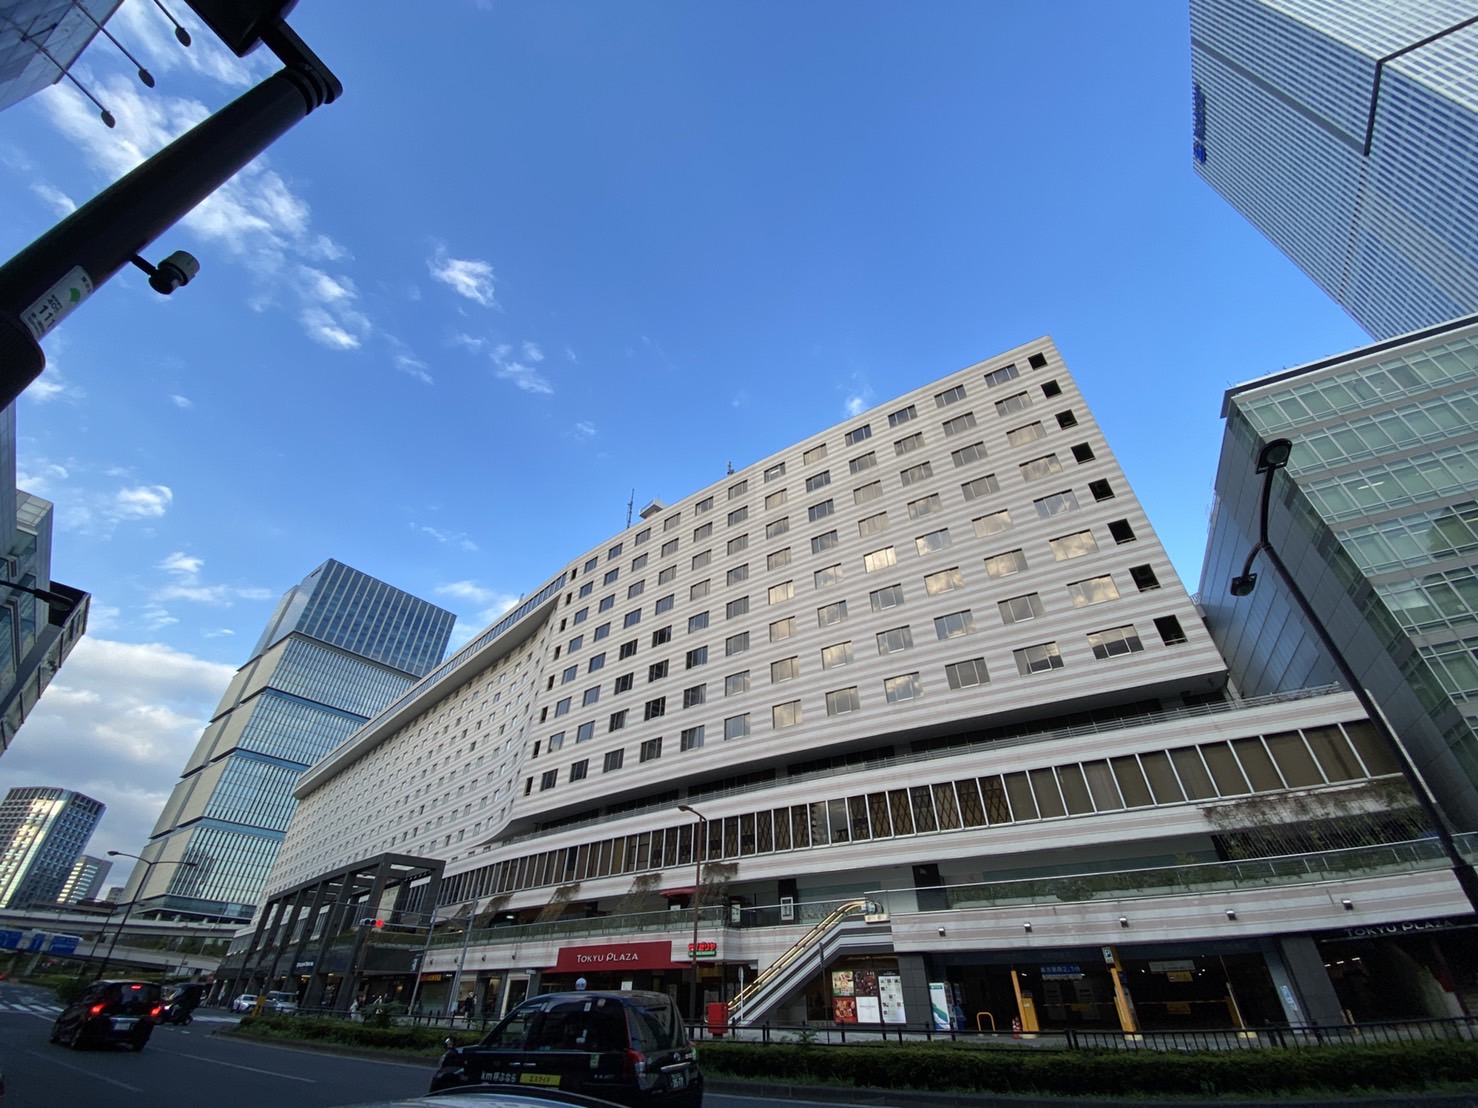 「赤坂エクセルホテル東急」が営業終了となります?